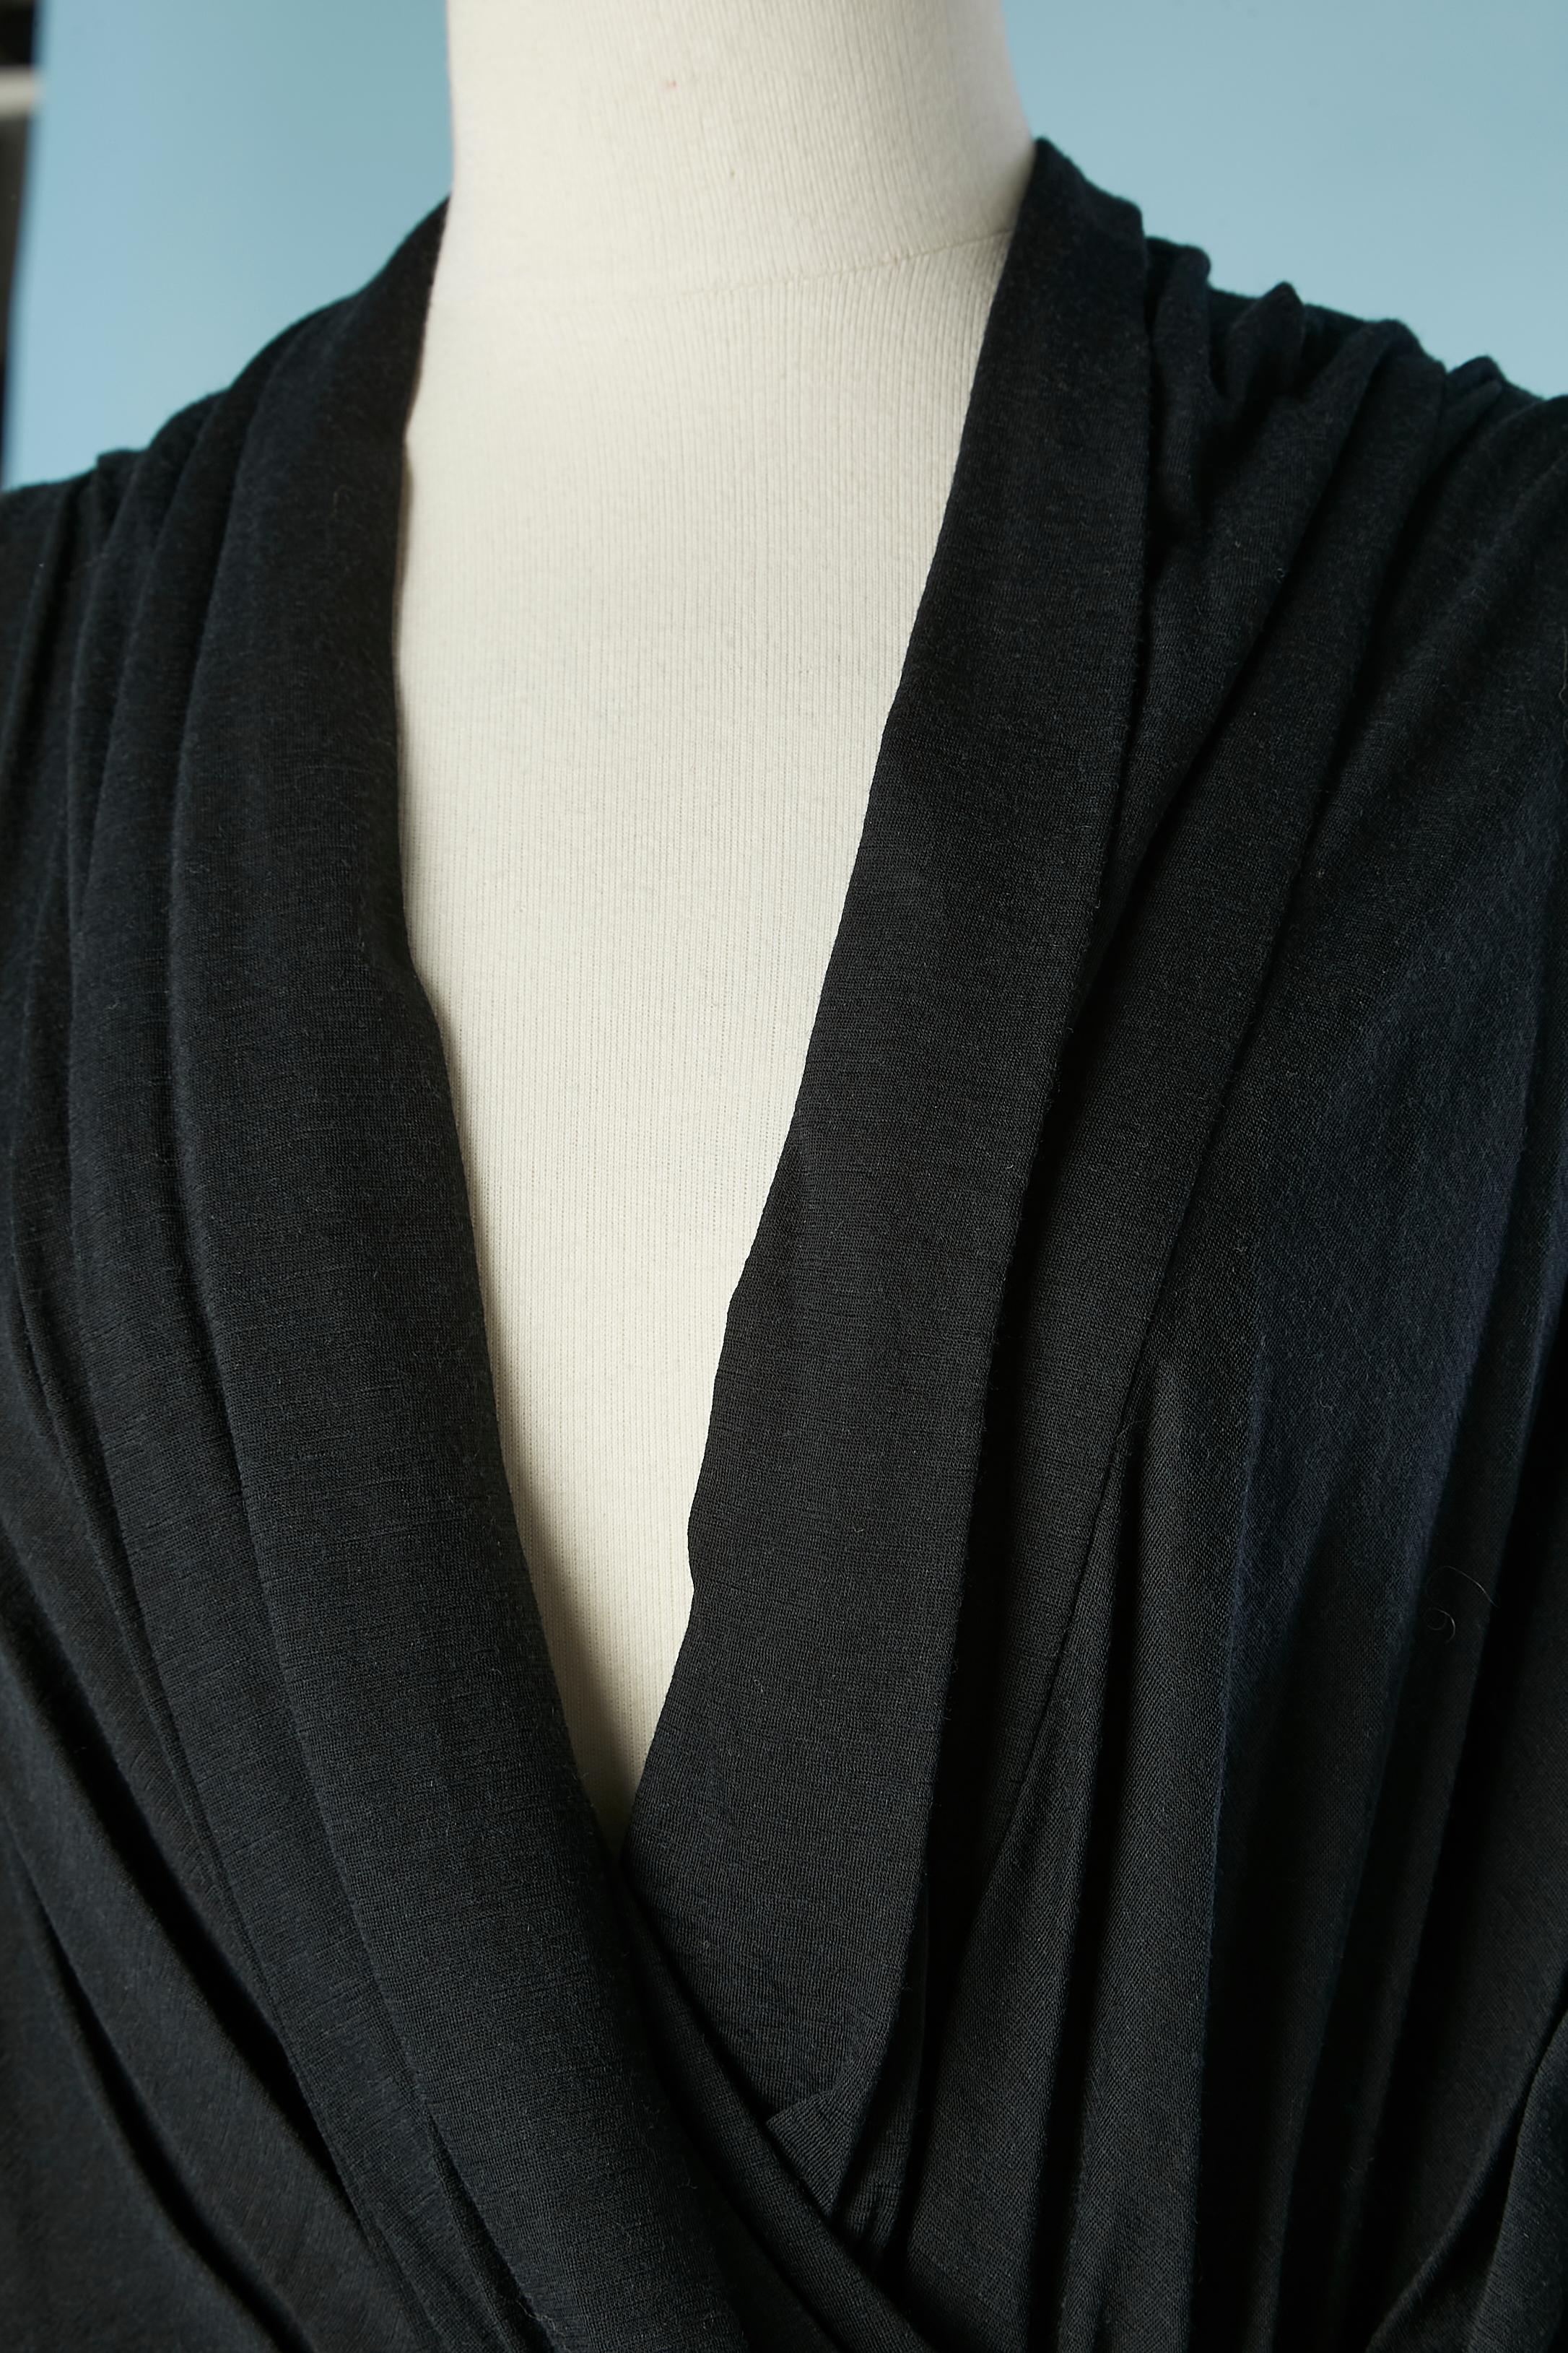 Robe en jersey drapé de laine  avec bande élastique à la taille, bord élastique des manches. Rayon gros grain à l'intérieur de la robe sur les épaules, fermeture éclair visible au milieu du dos. 
TAILLE 40 (Fr) 10 (Us) 